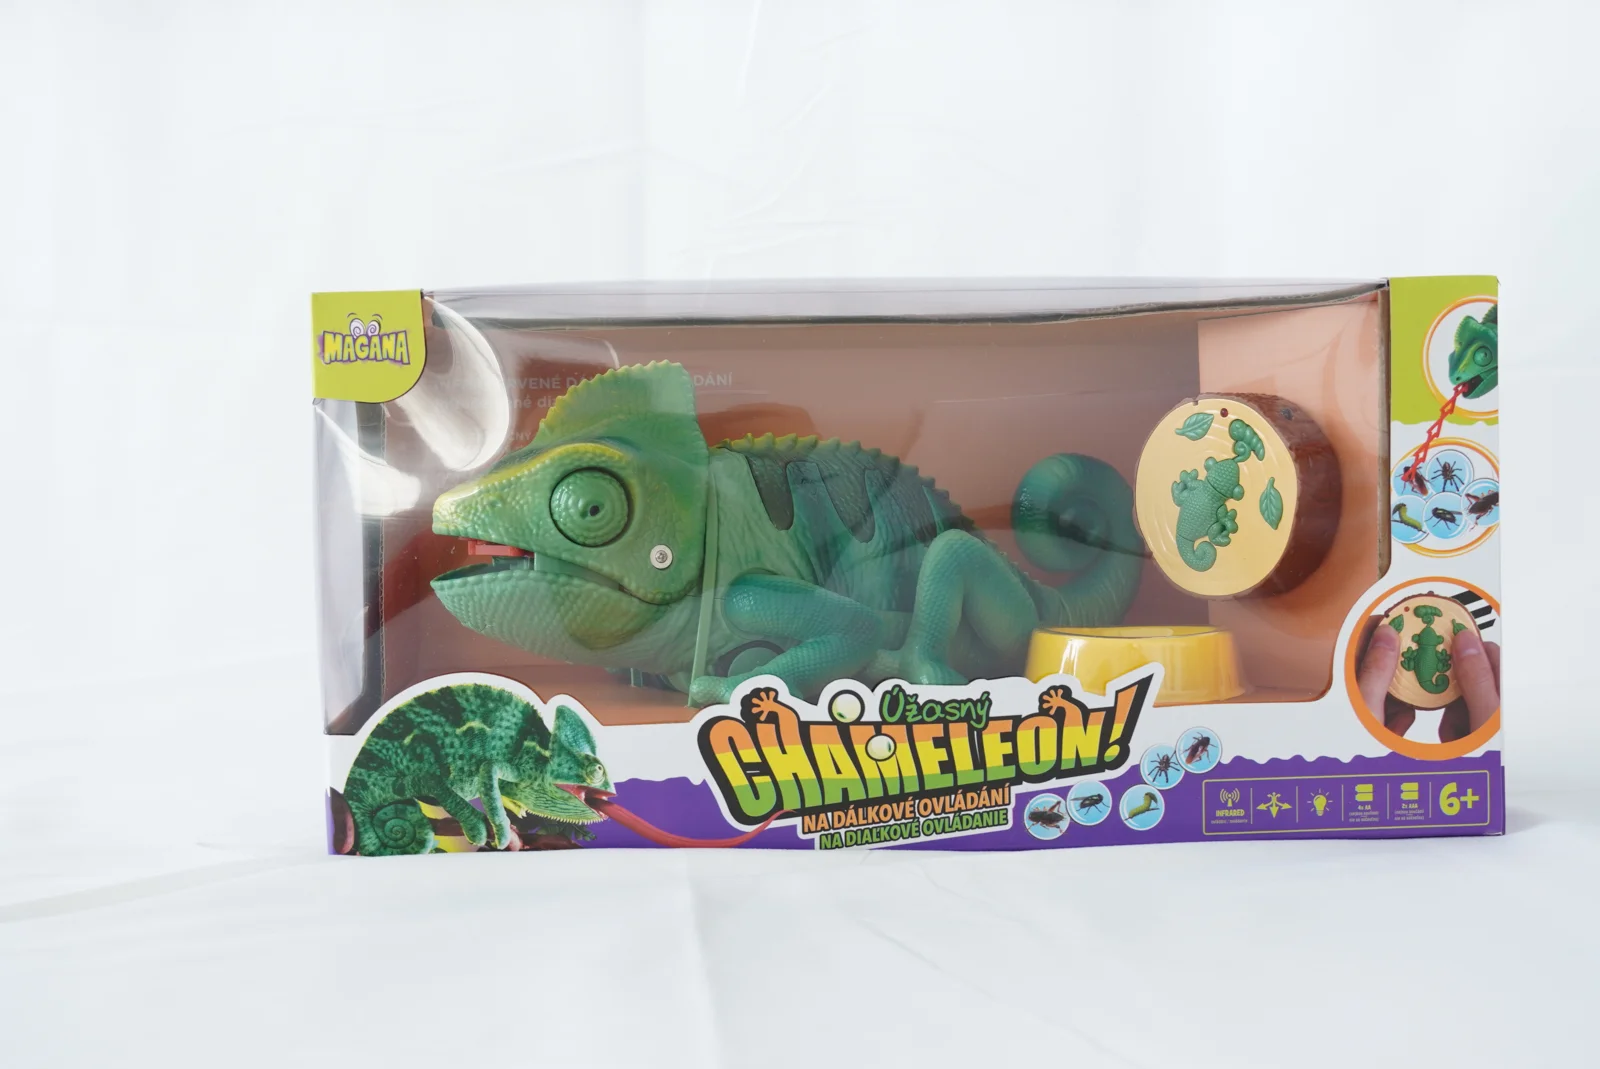 MAGANA Úžasný chameleon na ovládání